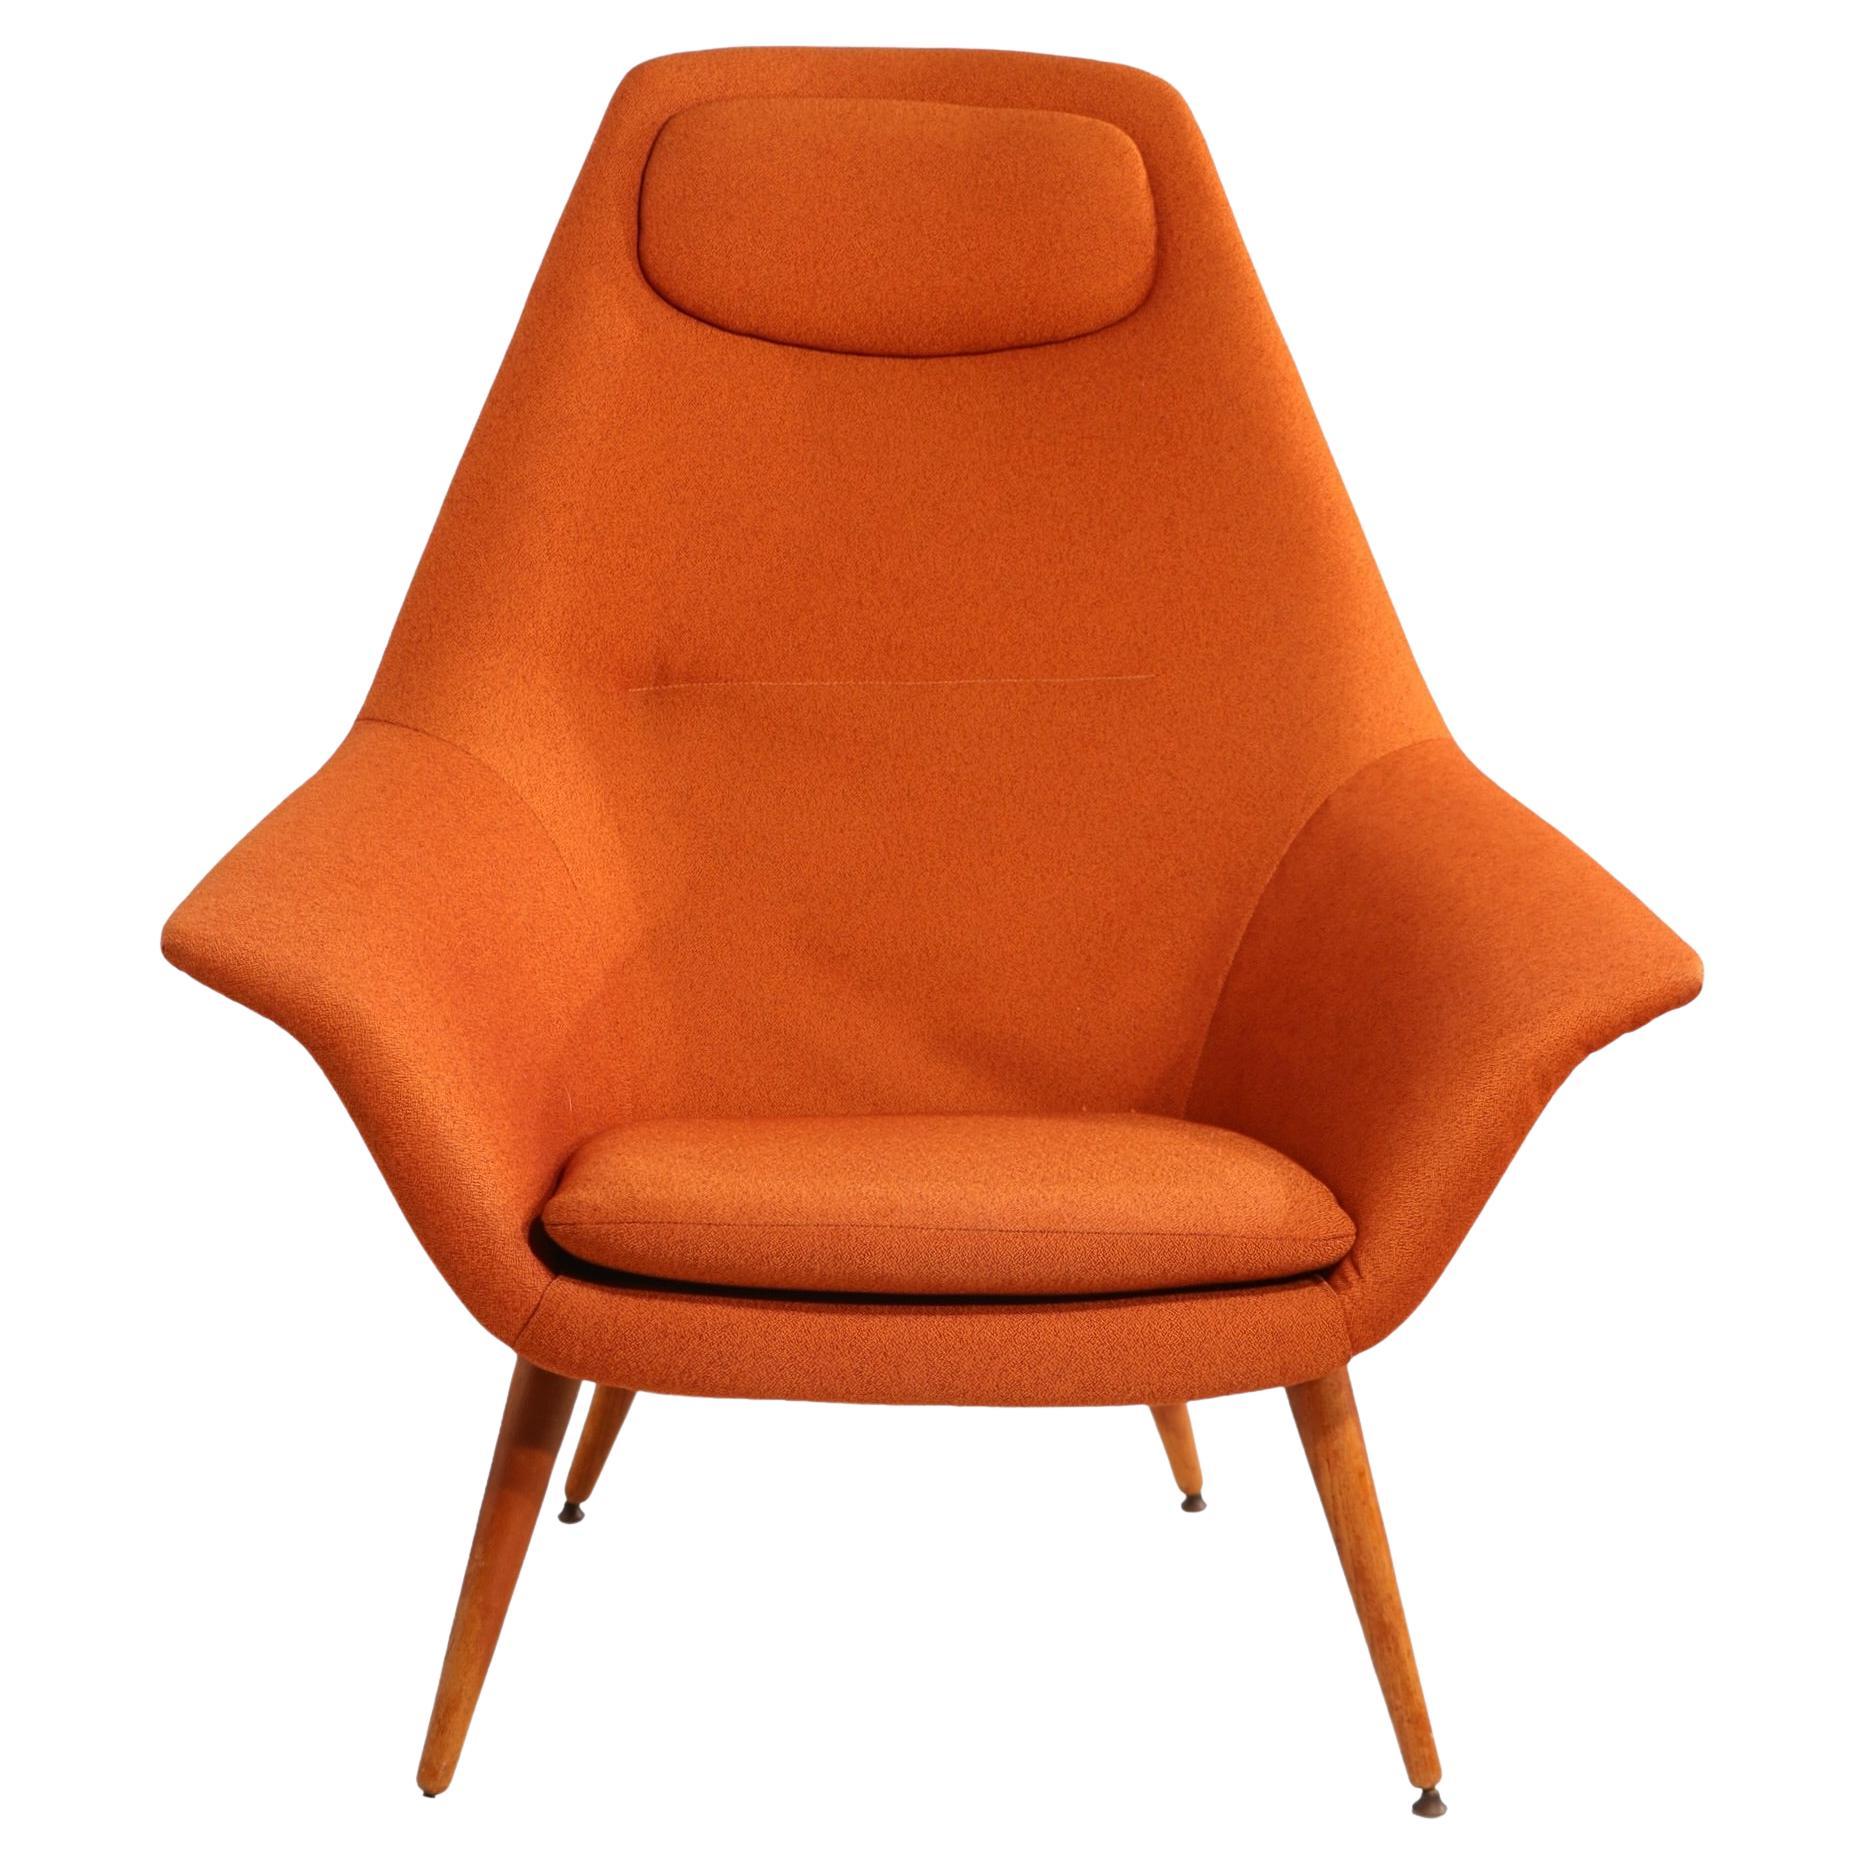 Seltener Mid Century Scandinavian Modern Lounge Chair, entworfen von Torbjorn Afdal für Bjarne Hansen, hergestellt in Norwegen um 1950. Bequem, stilvoll und schwer zu finden, vor allem in diesem Zustand, wirklich ein Klassiker aus dem Goldenen